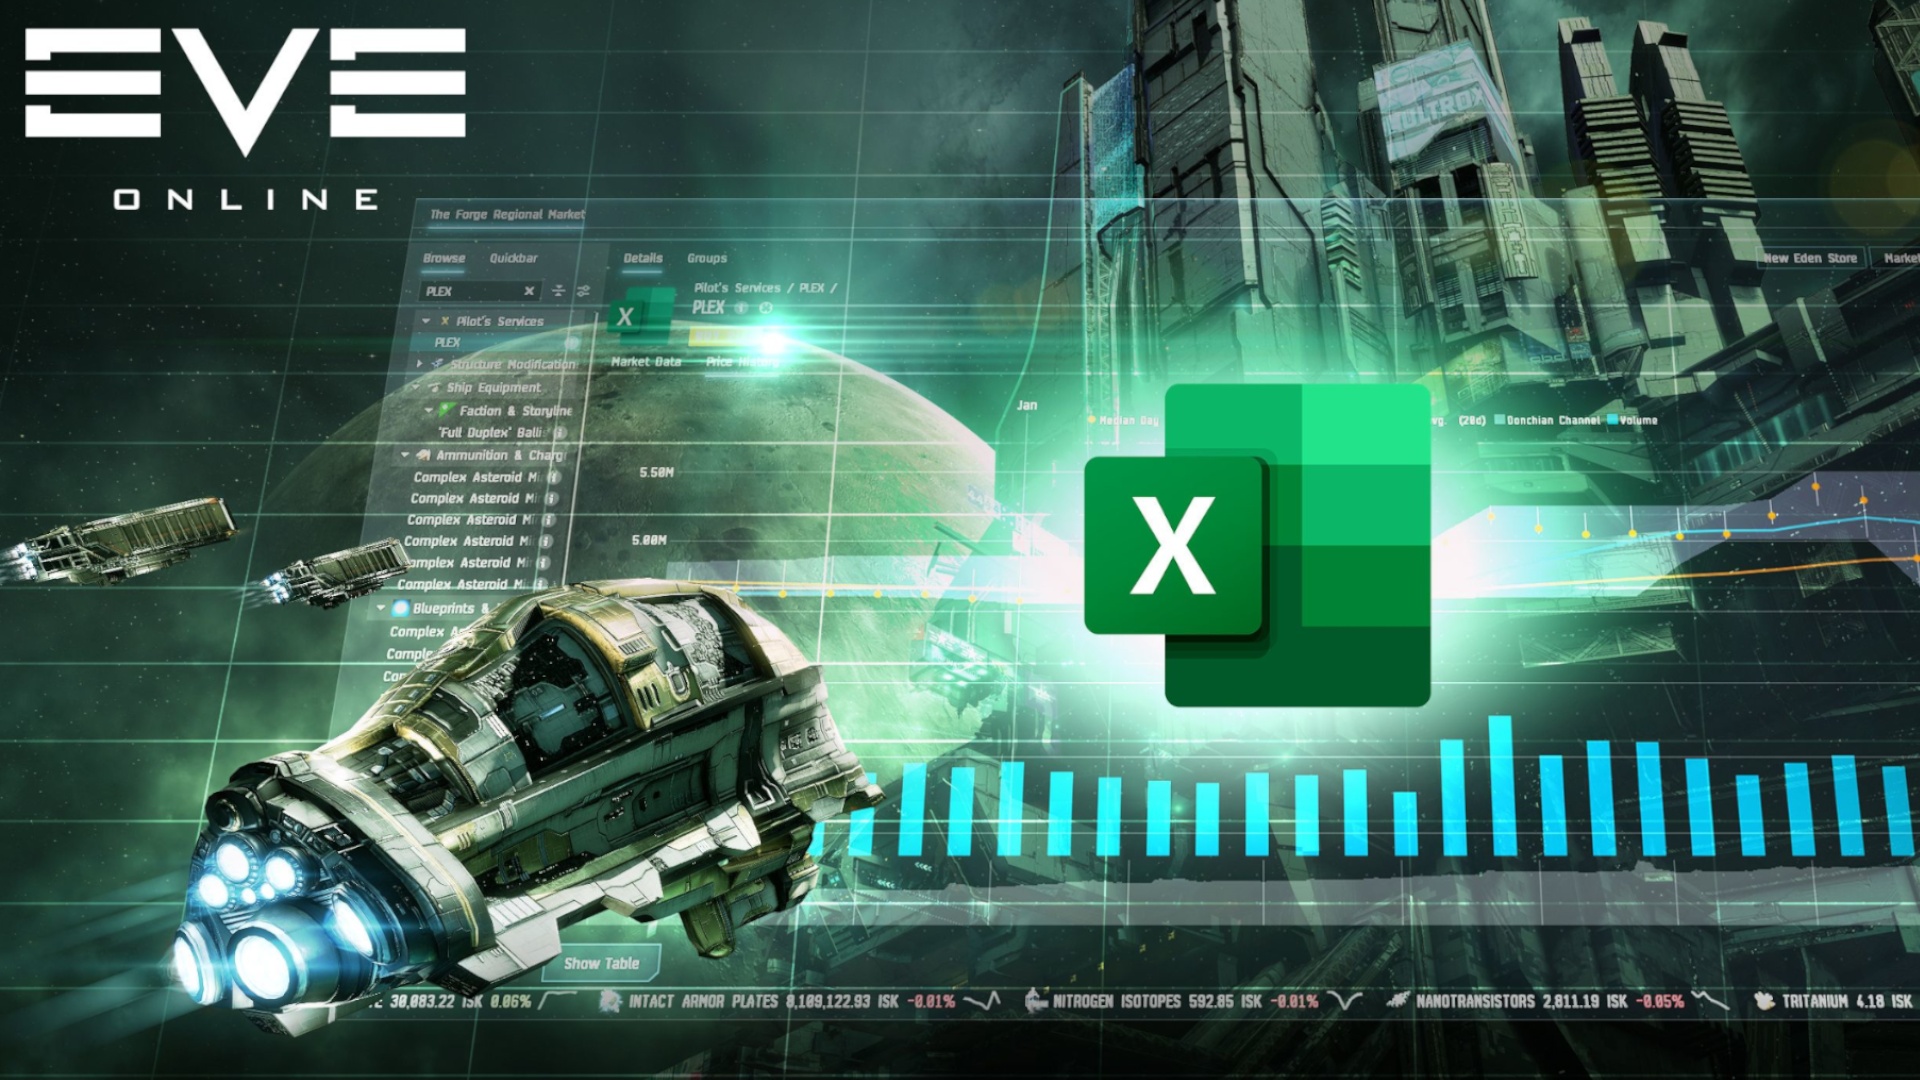 #Die Weltraum-Simulation Eve Online ist so komplex, dass Excel jetzt offiziell Teil des Spiels wird